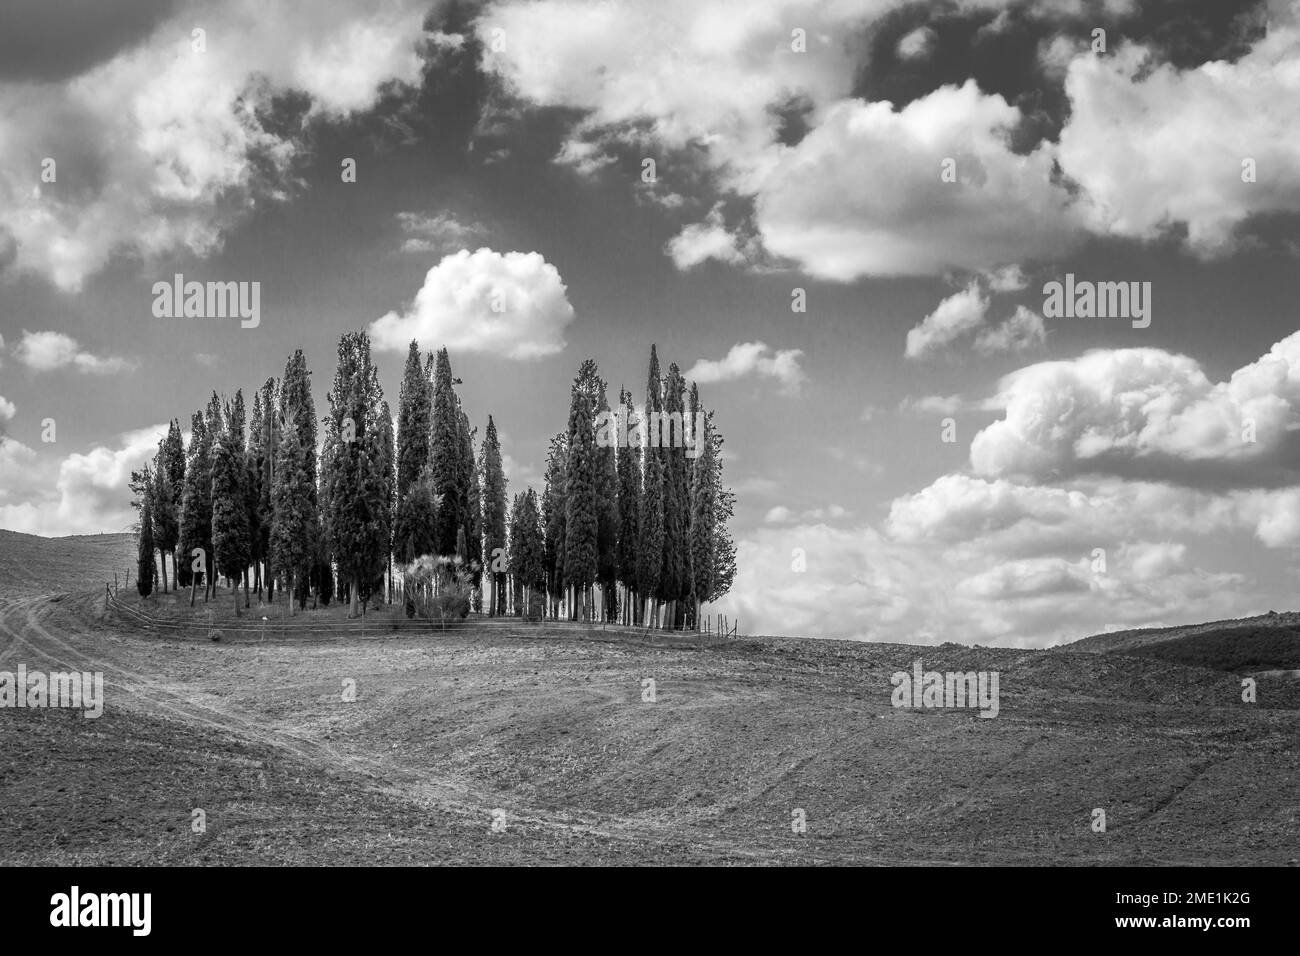 Le cercle emblématique des cyprès du Val d'Orcia en Toscane, les arbres les plus photographiés au monde. Italie. Banque D'Images